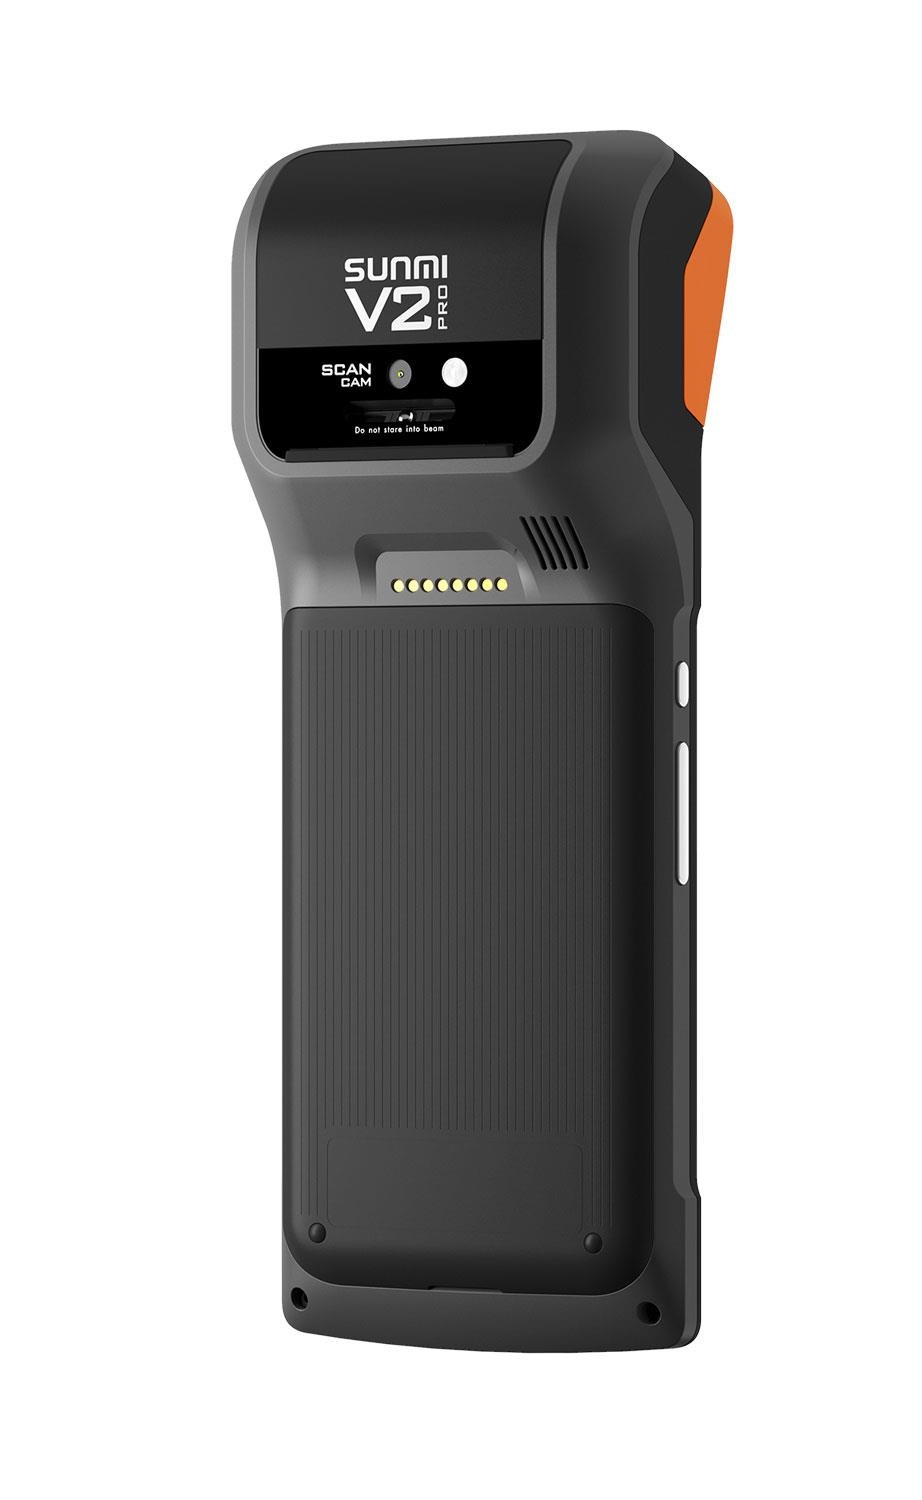 V2Pro Android 7.1 เครื่อง POS แบบพกพา ปริ้นเตอร์ 58mm 4G wifi bluetooth 5MP Camera อ่านบาร์โค้ด 1D & 2D QR code หน้าจอ 5.99 นิ้ว ทัชสกรีน หน่วยความจำ 2G RAM 16GB มี battery 2580mAh น้ำหนักเบา พกพาสะดวกสะบาย เหมาะสำหรับงานขายสินค้านอกสถานที่ รองรับ โปรแกรม Loyvers แถมฟรี ในตัวเครื่อง.